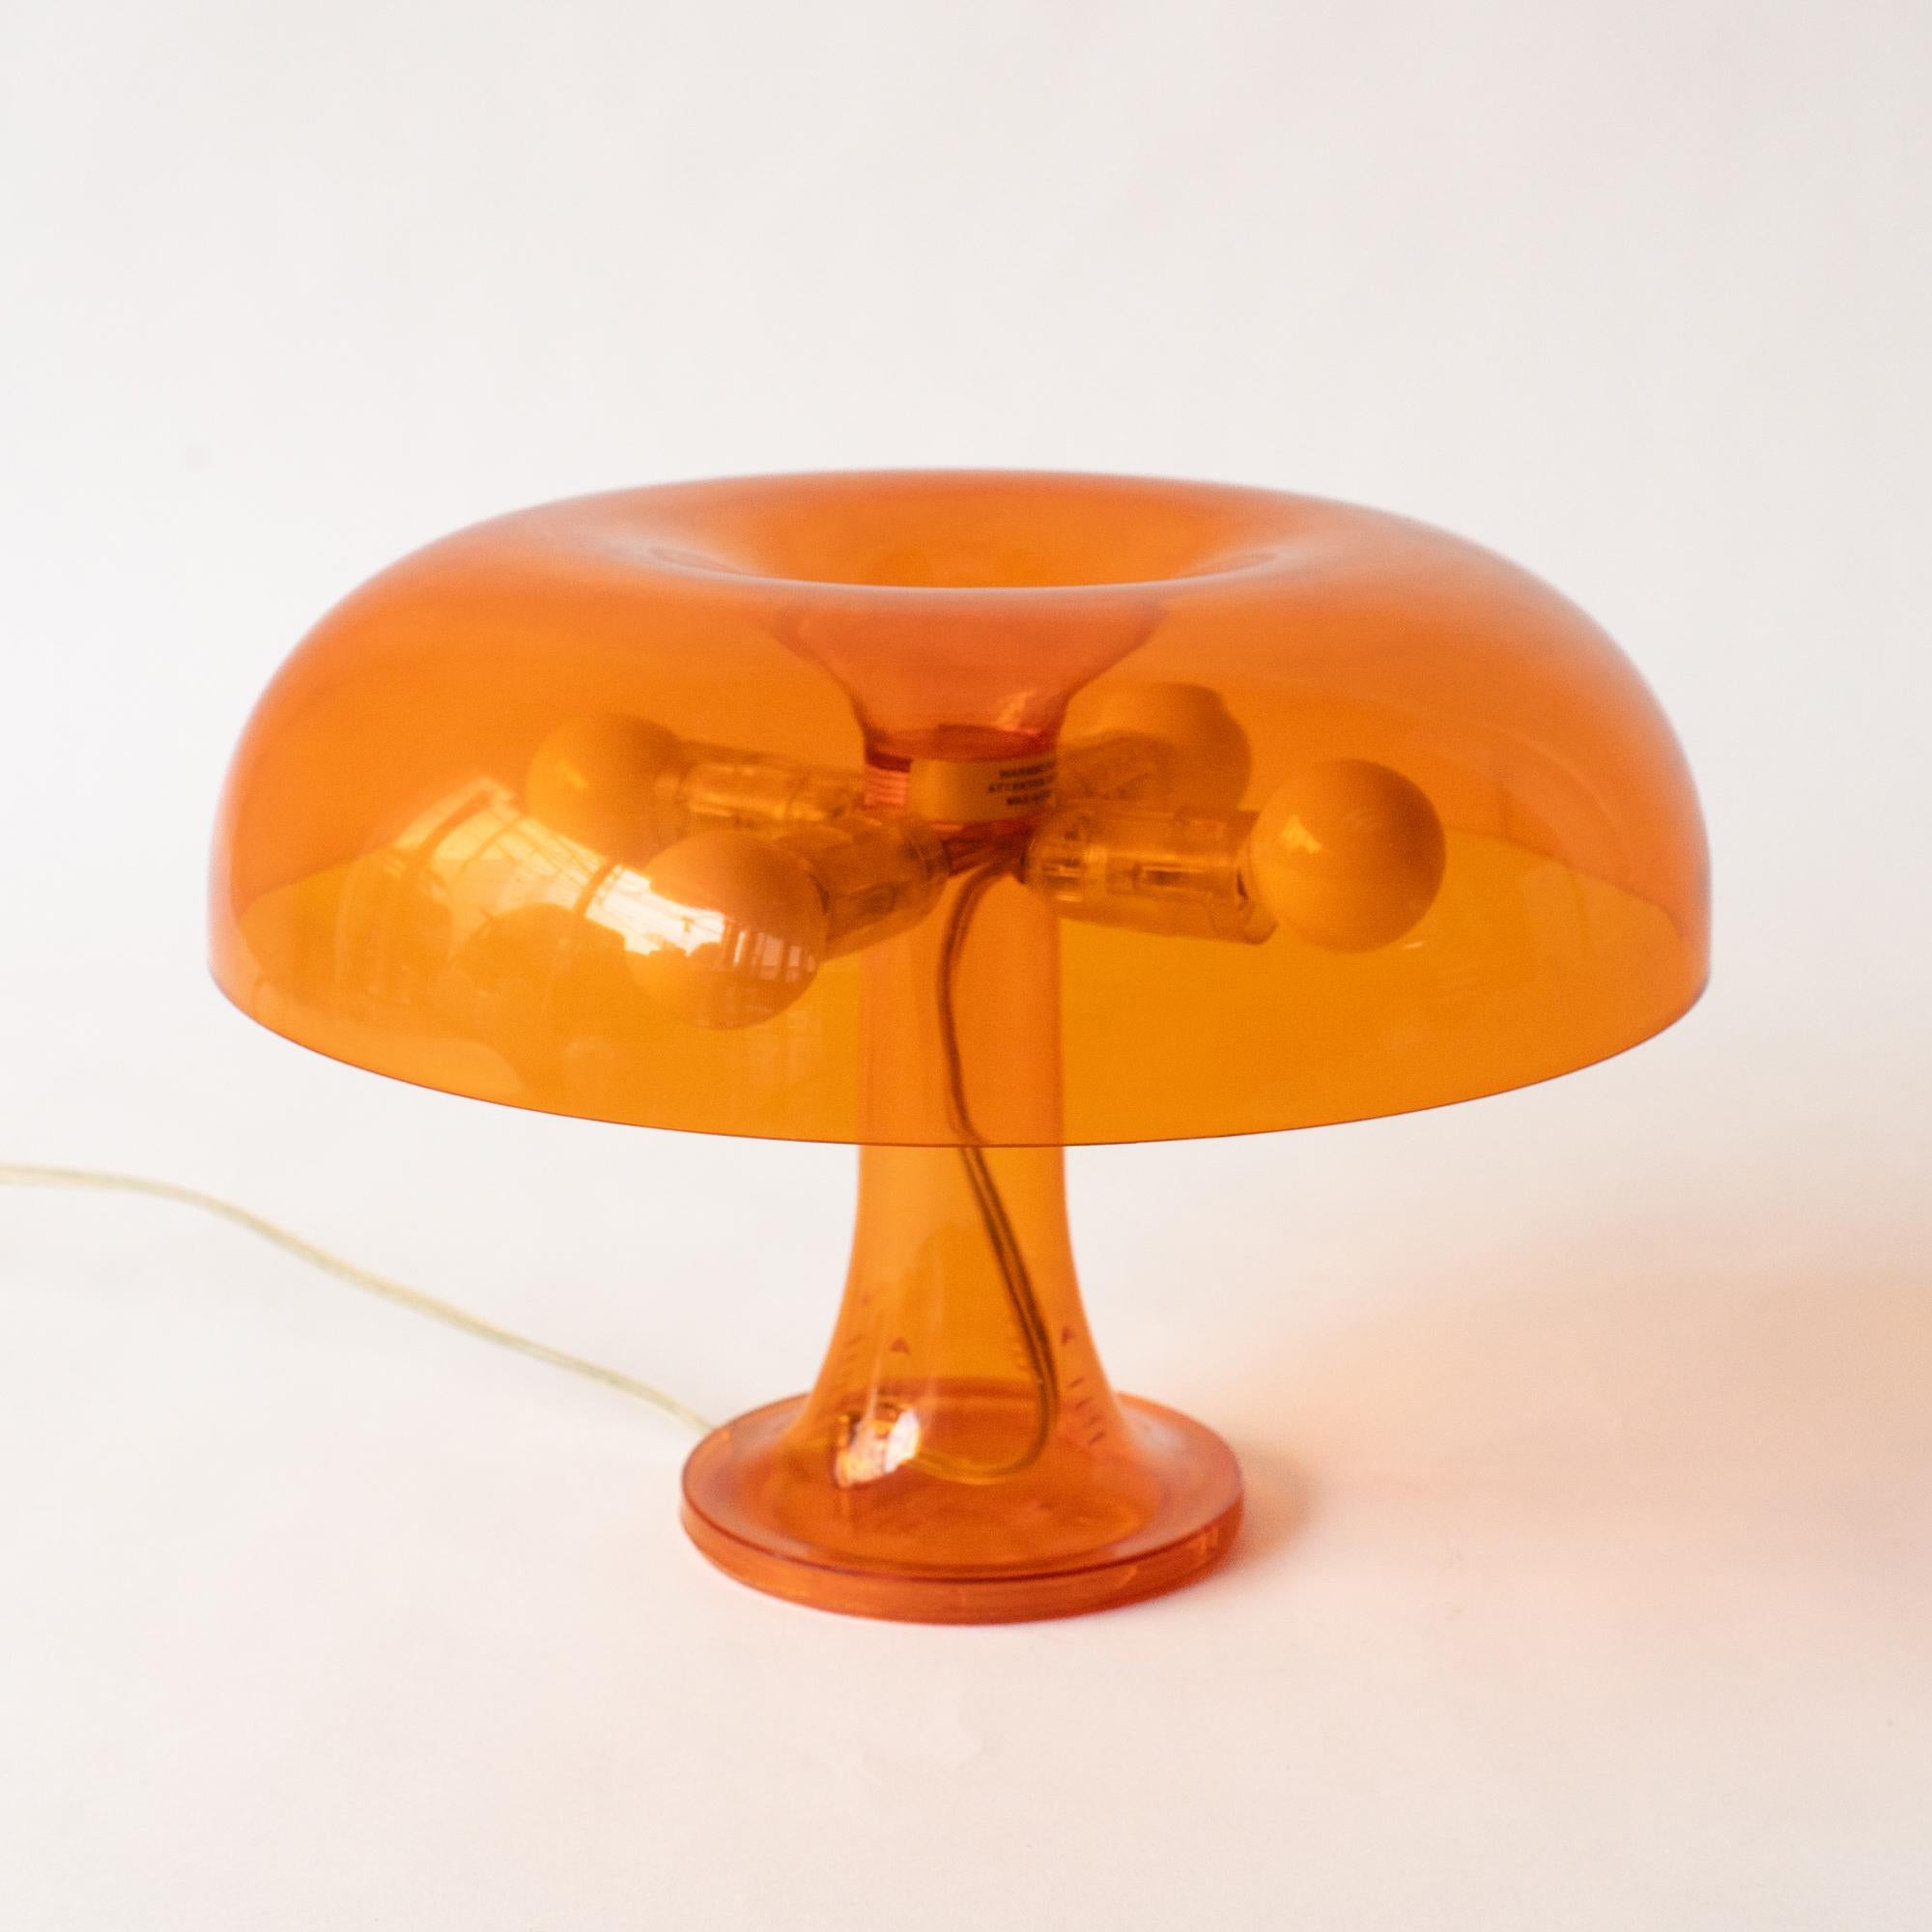 Chef-d'œuvre de lampe de table au design de l'ère spatiale. L'original a été commercialisé dans les années 60 par Artemide.  Il s'agit d'un modèle transparent commercialisé entre la fin des années 90 et les années 2000. Il s'agit d'une conception